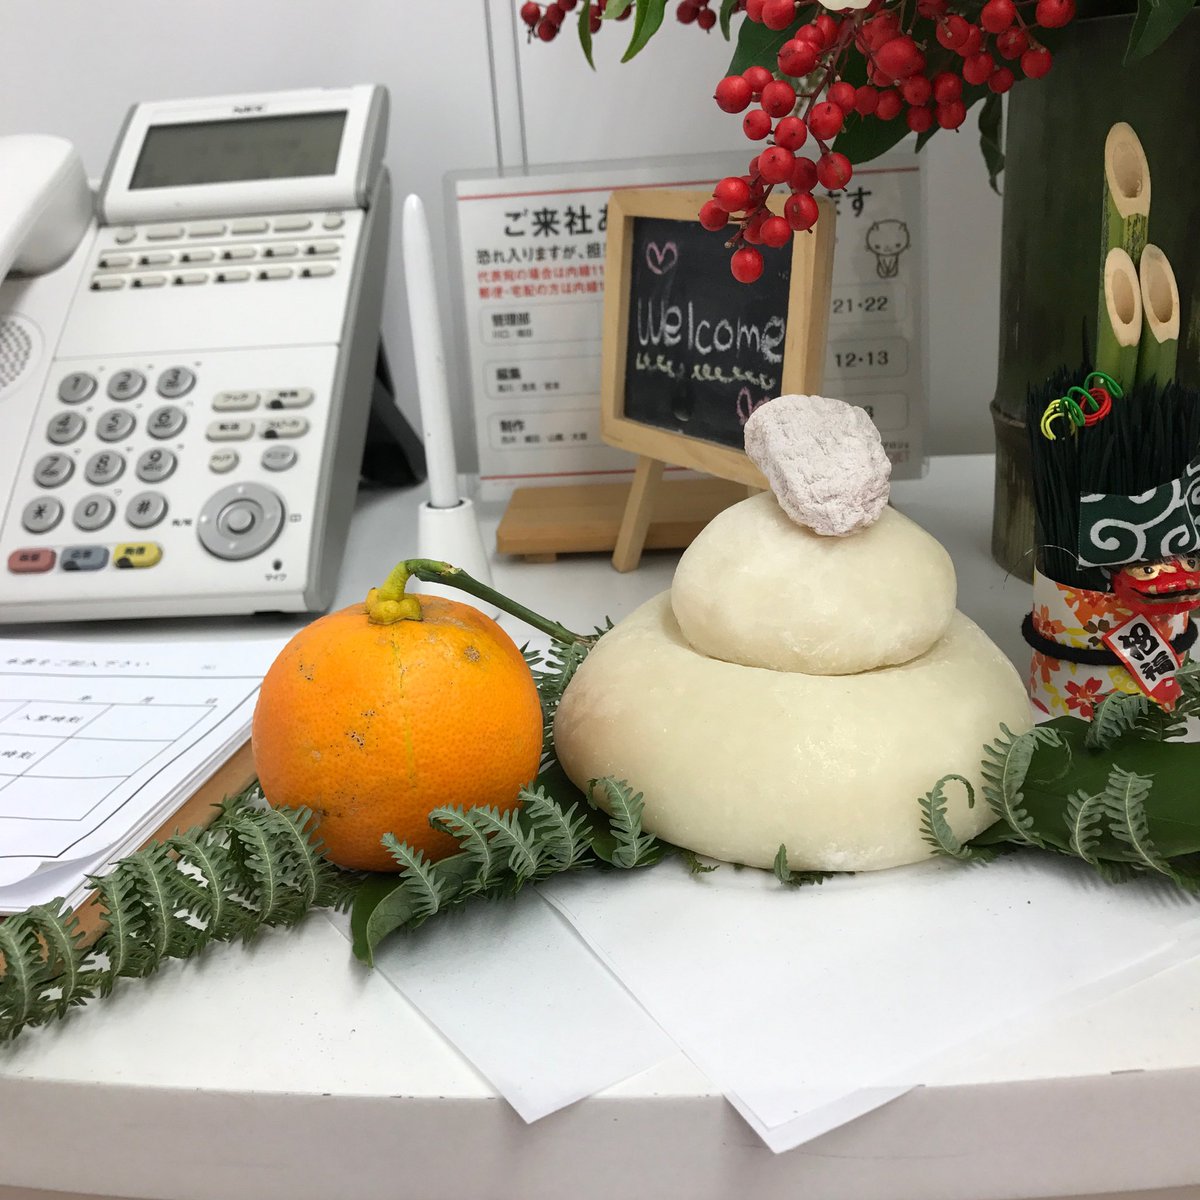 高川朋子 会社の鏡餅 ダイダイ ミカン が大き すぎて載らないので代わりに干し柿が載せられてるんですけど 買って来た人曰く この大きさしかなかった とのことでダイダイ巨大化疑惑